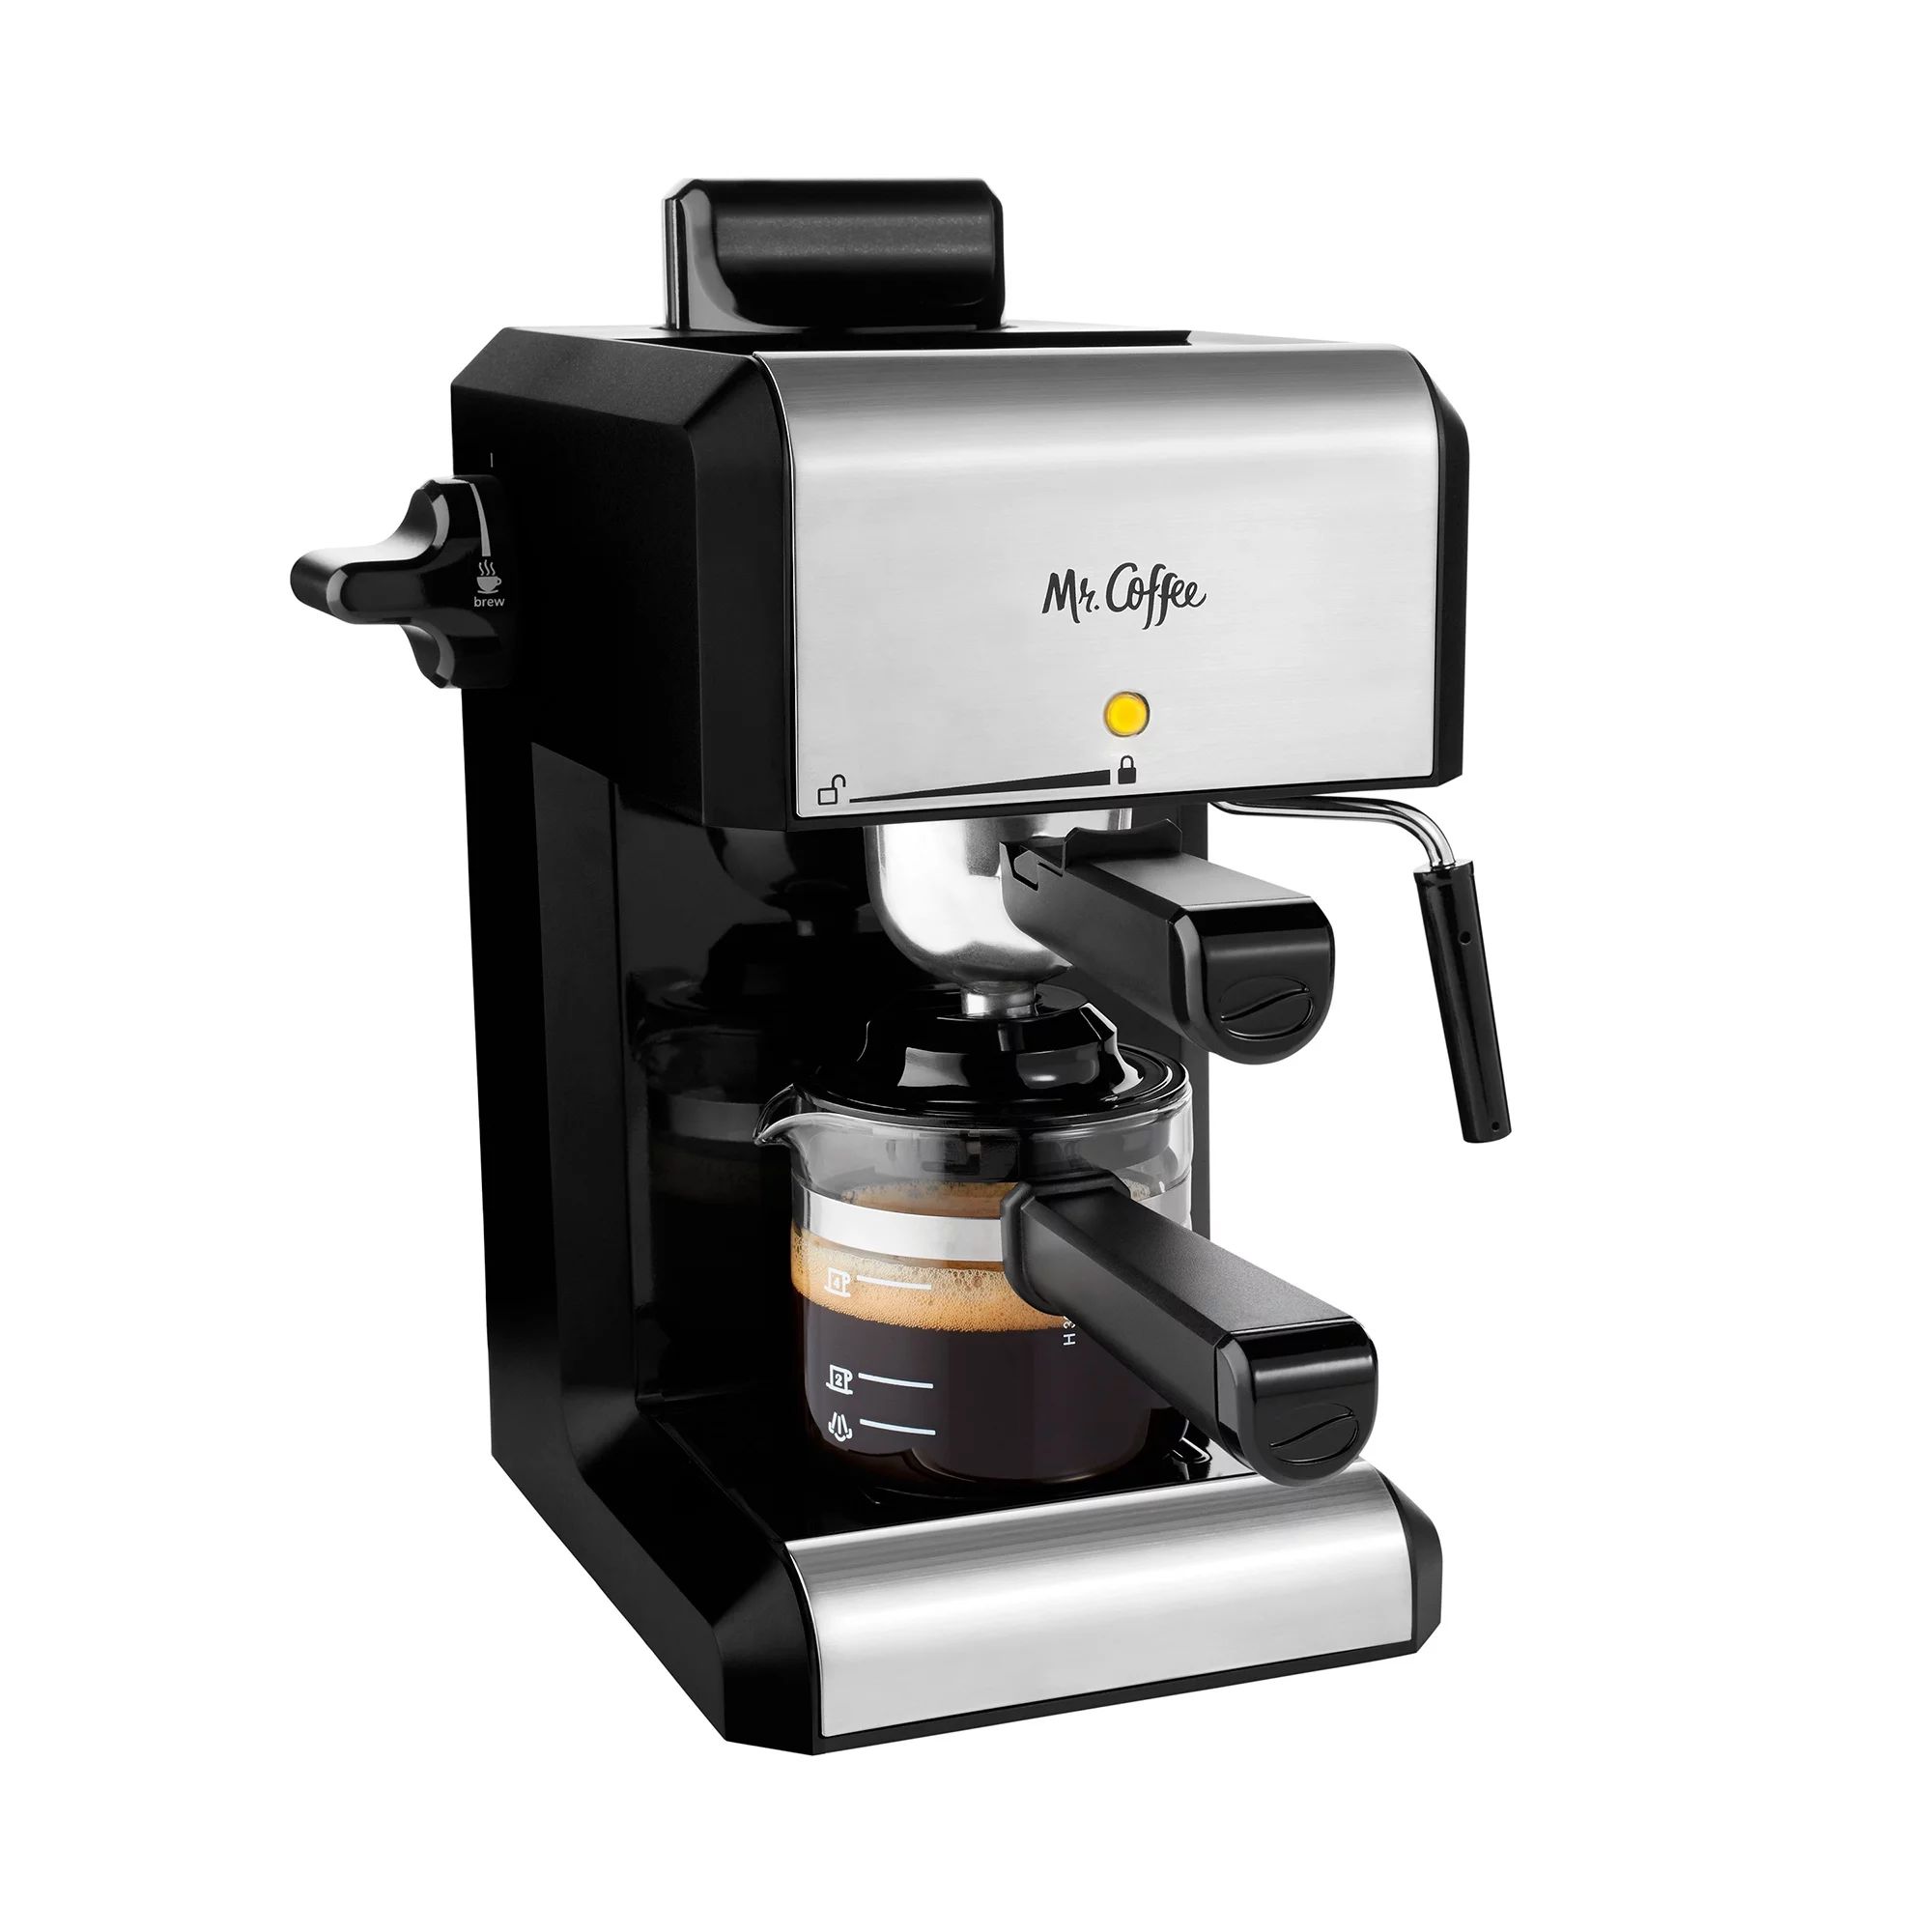 Mr. Coffee Caf Steam Automatic Espresso and Cappuccino Machine, 20 oz, Silver | Walmart (US)